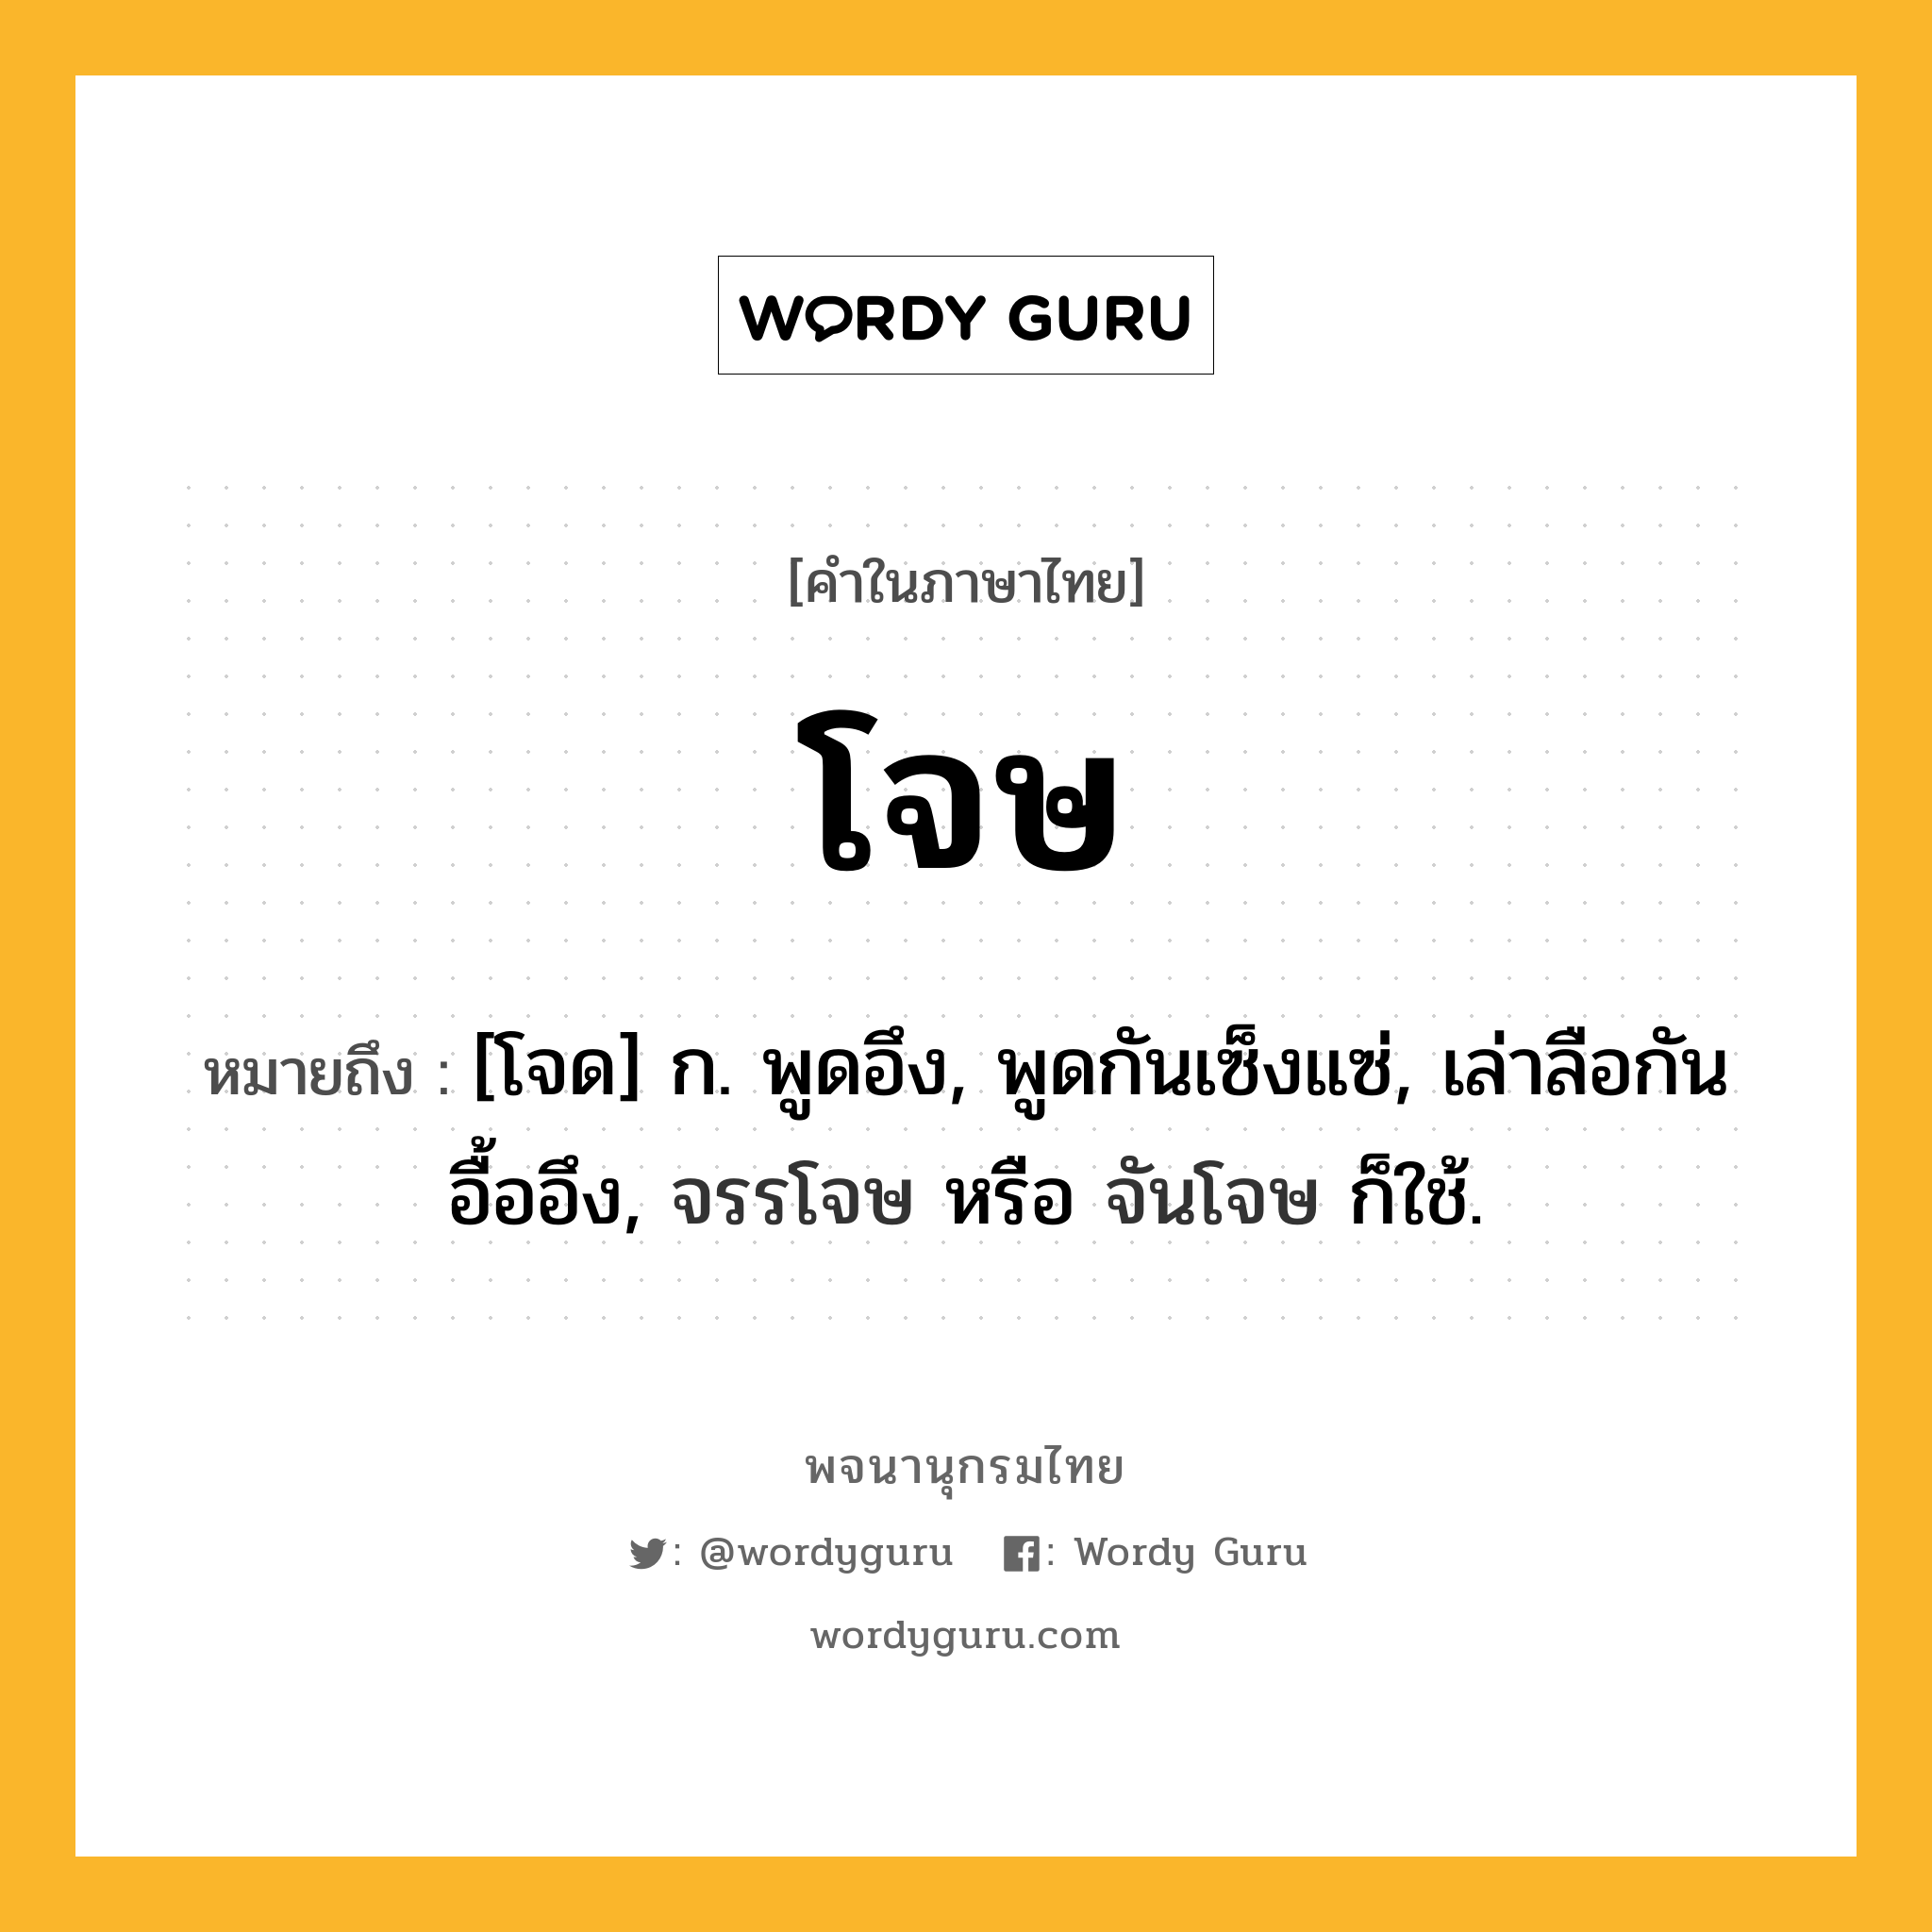 โจษ ความหมาย หมายถึงอะไร?, คำในภาษาไทย โจษ หมายถึง [โจด] ก. พูดอึง, พูดกันเซ็งแซ่, เล่าลือกันอื้ออึง, จรรโจษ หรือ จันโจษ ก็ใช้.